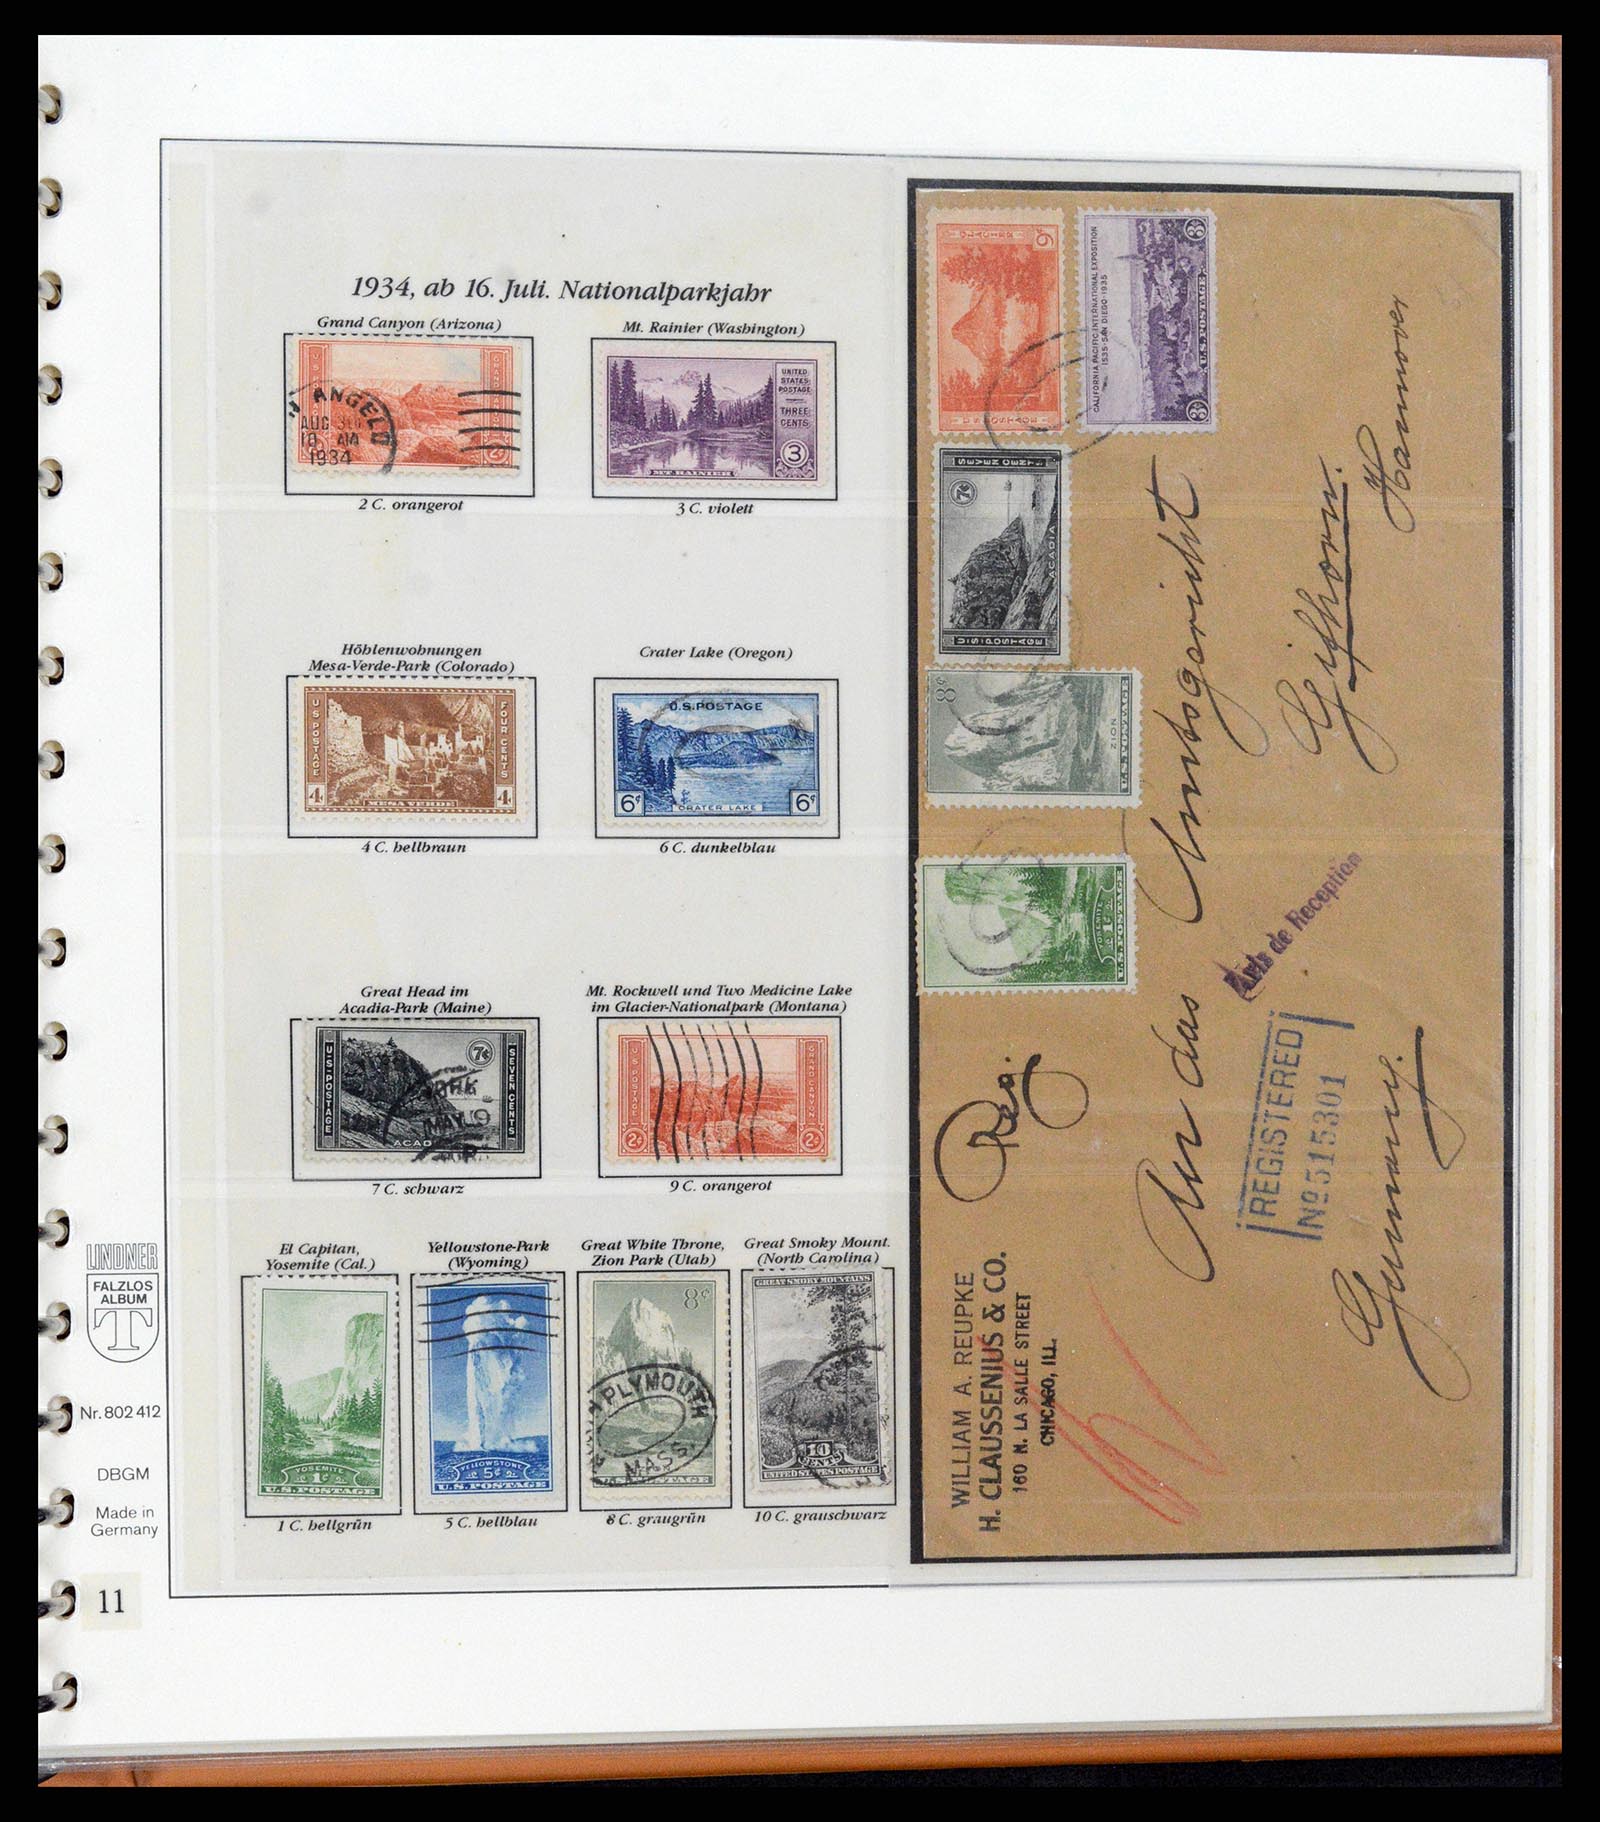 37653 080 - Stamp collection 37653 USA 1870-1954.